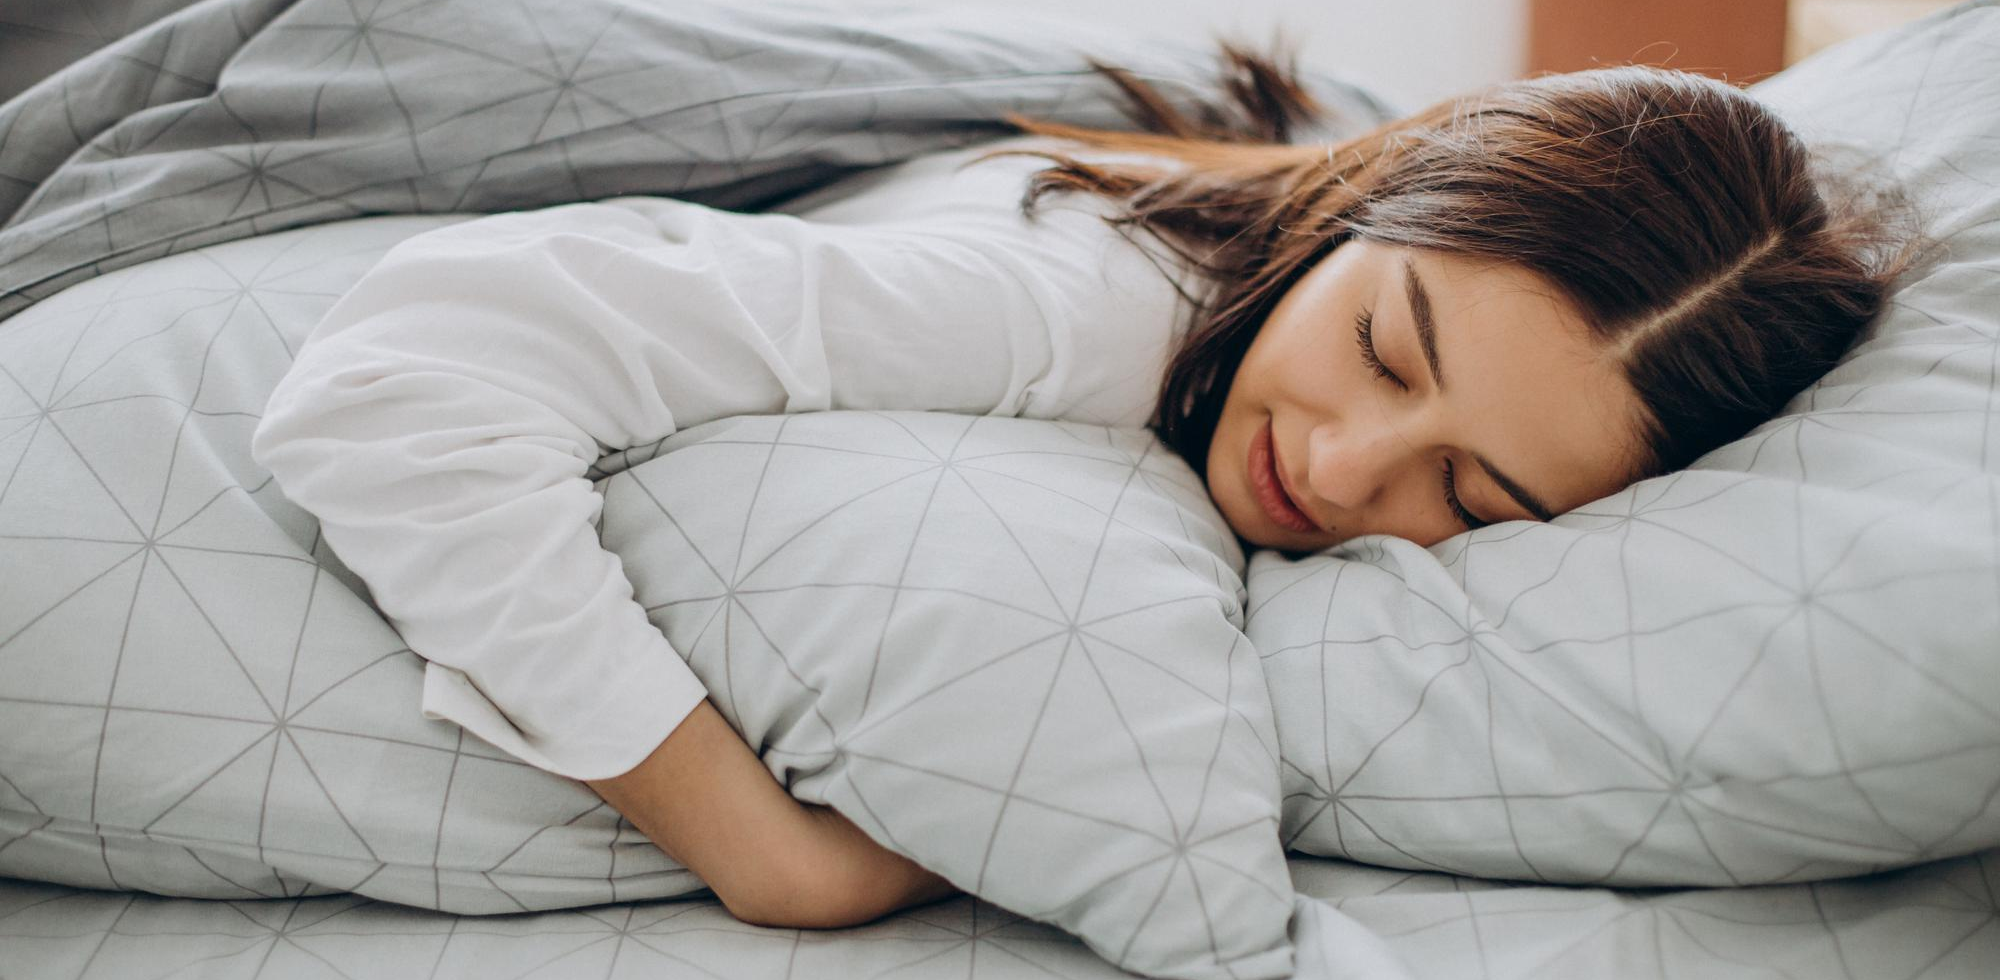 Cómo funciona una manta con peso? – Contra el estrés y el insomnio